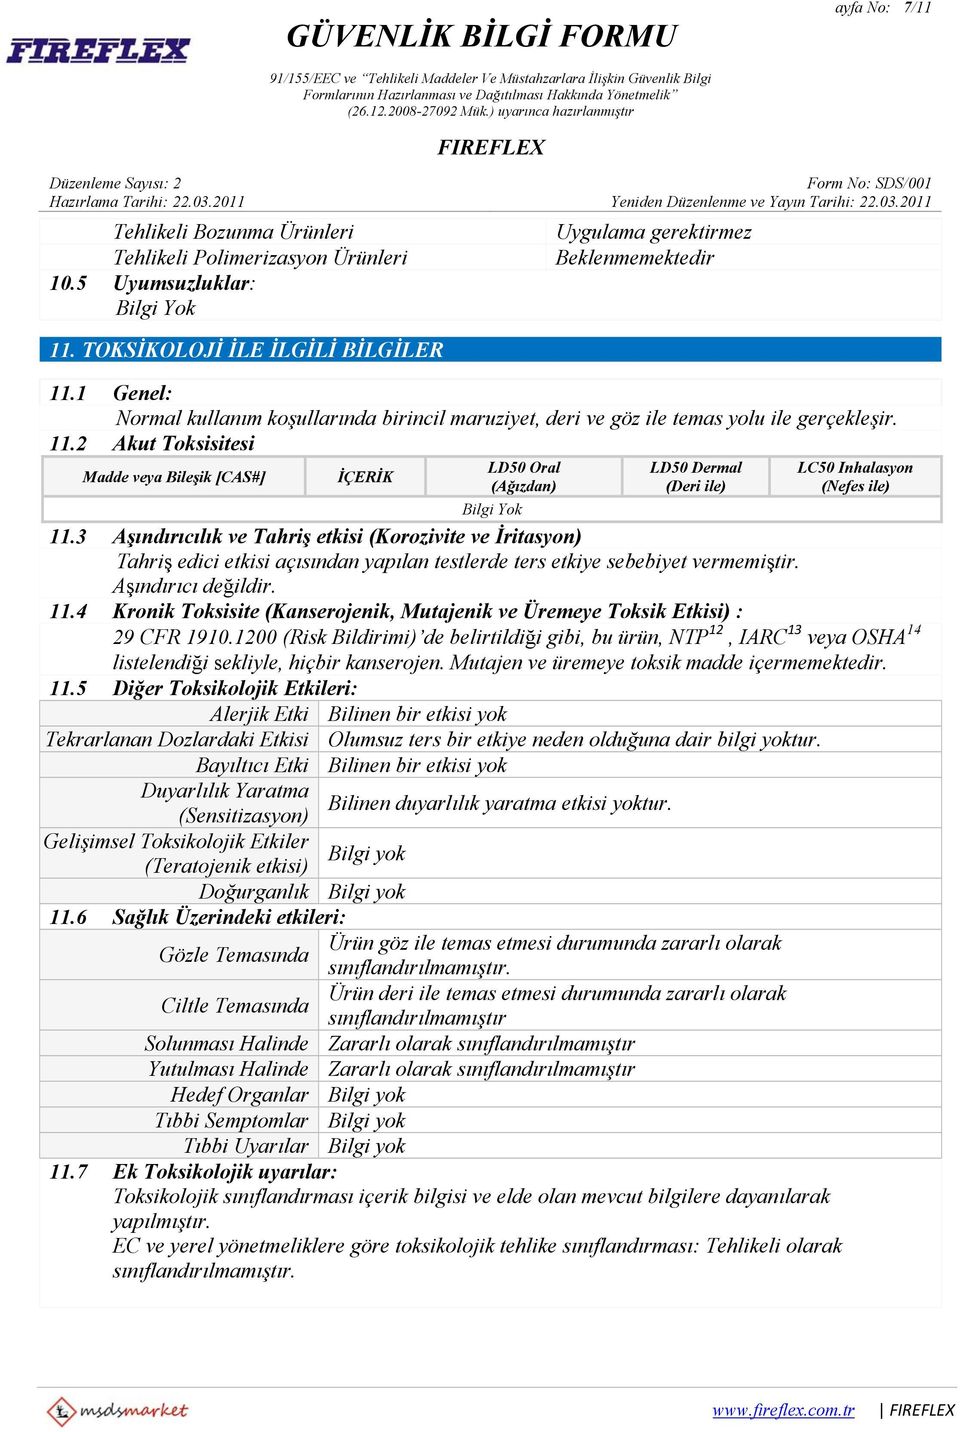 2 Akut Toksisitesi Madde veya Bileşik [CAS#] İÇERİK LD50 Oral (Ağızdan) LD50 Dermal (Deri ile) LC50 Inhalasyon (Nefes ile) 11.